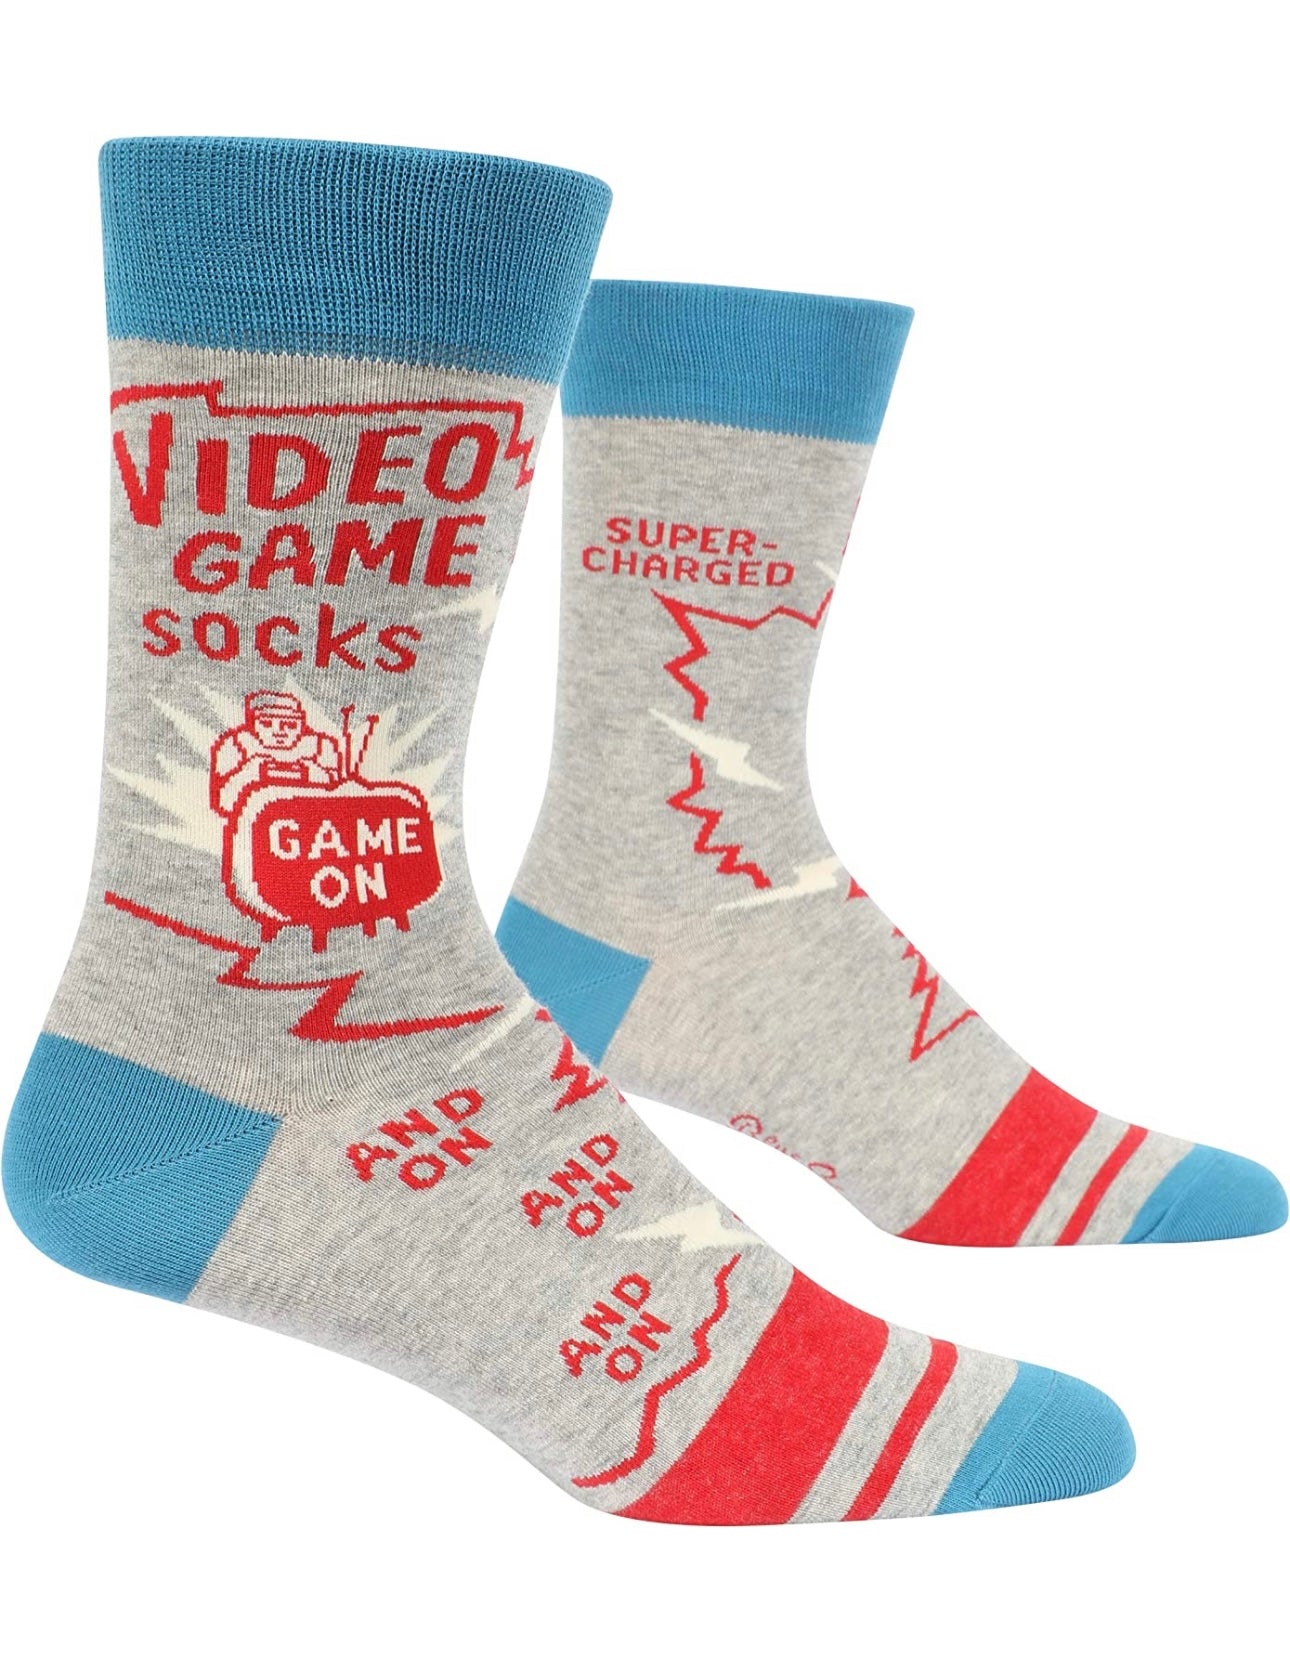 Video Game Socks Men's Crew Novelty Socks